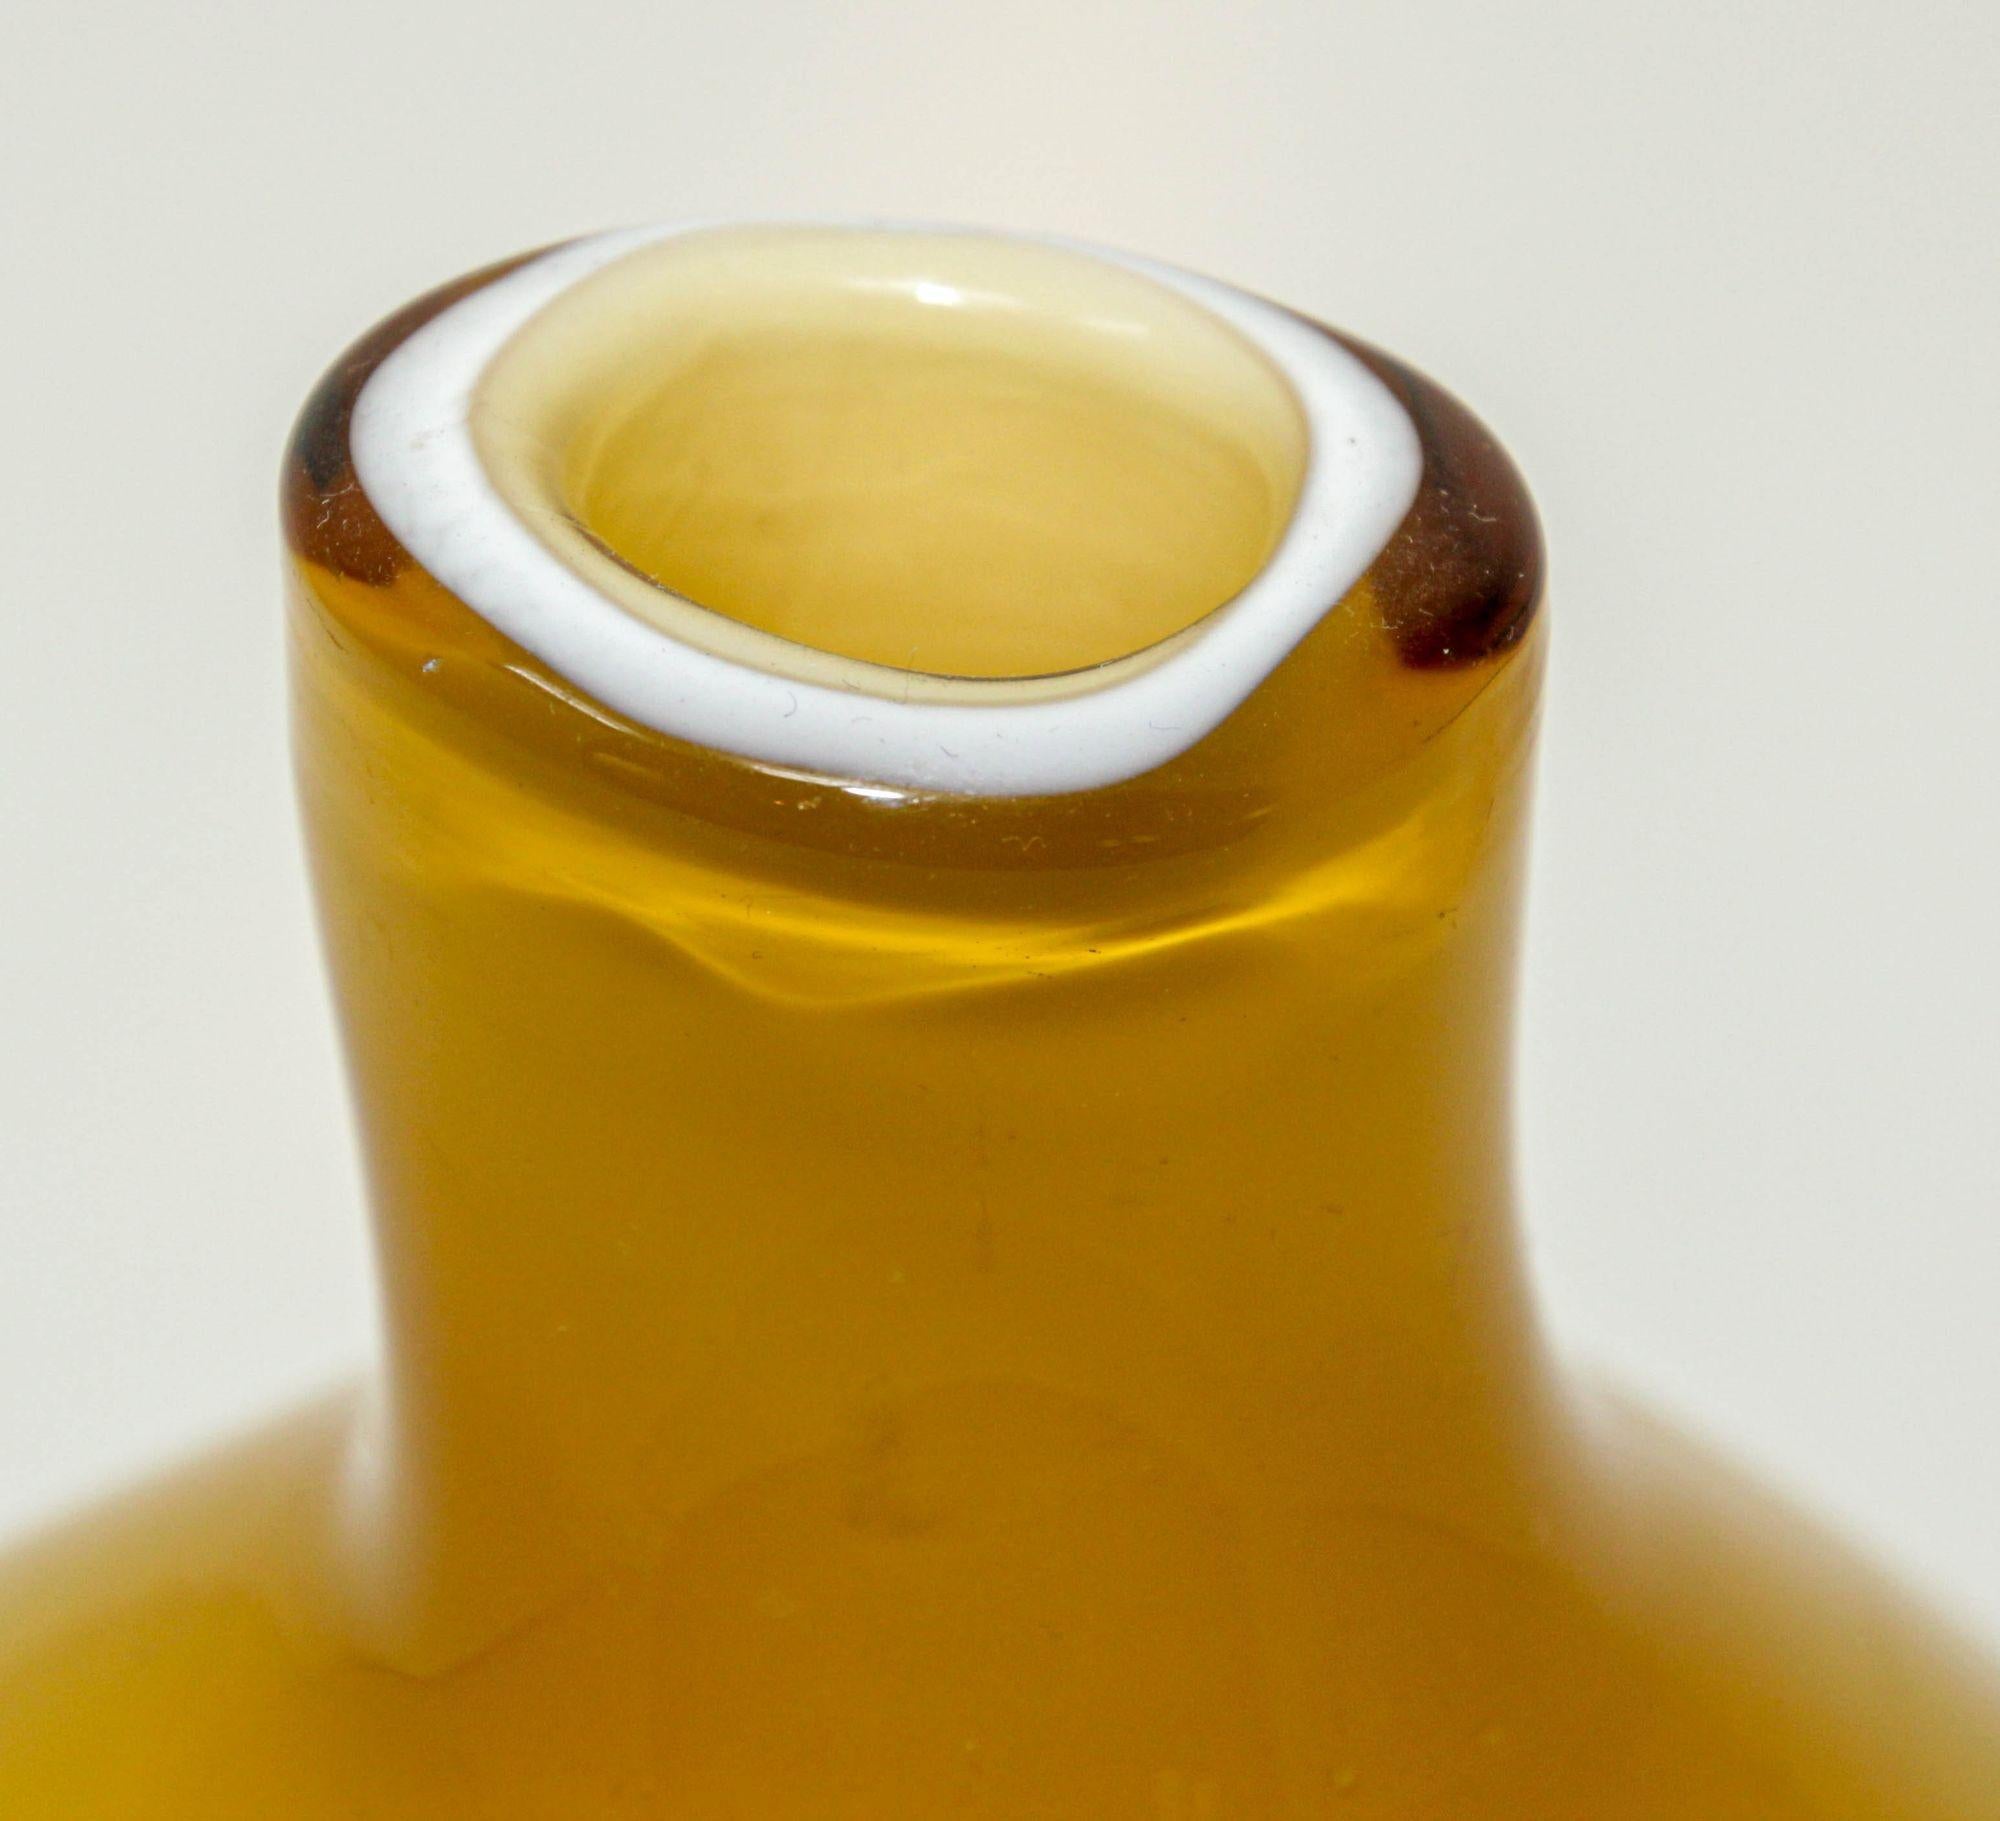 Vase d'art décoratif en verre soufflé à la main de Murano, jaune vif, du milieu du siècle dernier, années 1960.
Un superbe vase en verre d'art italien soufflé à la main à Murano, en verre jaune ambré, attribué à Fratelli Toso.
Élément bulbeux